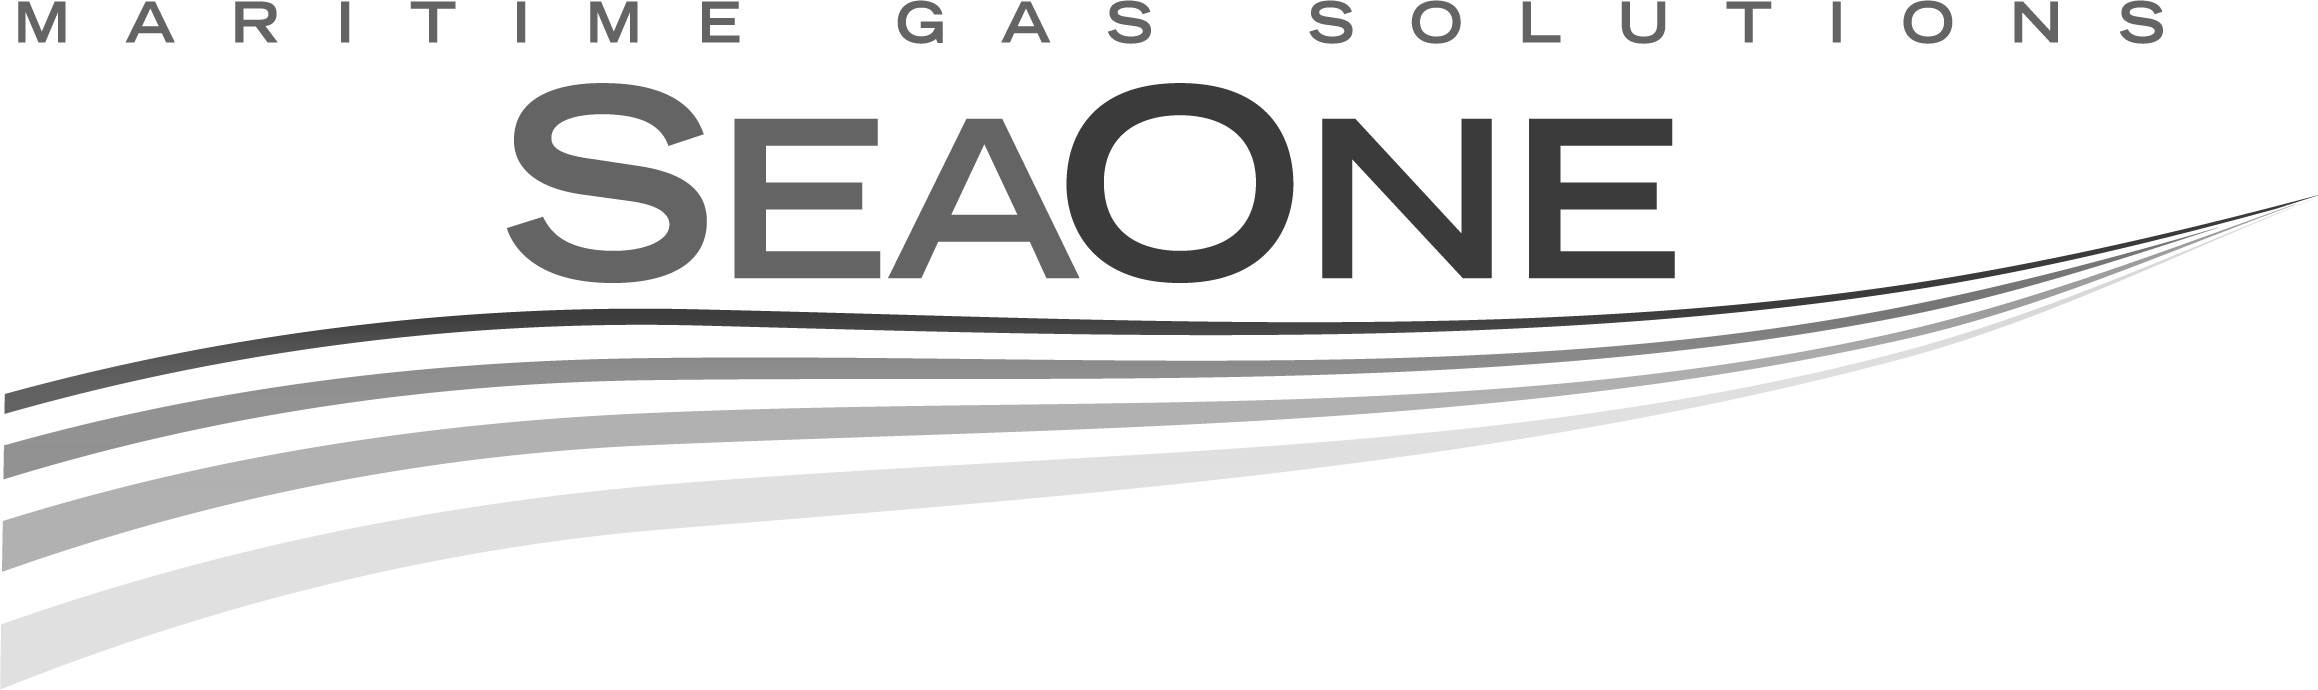 SeaOne-logo.png